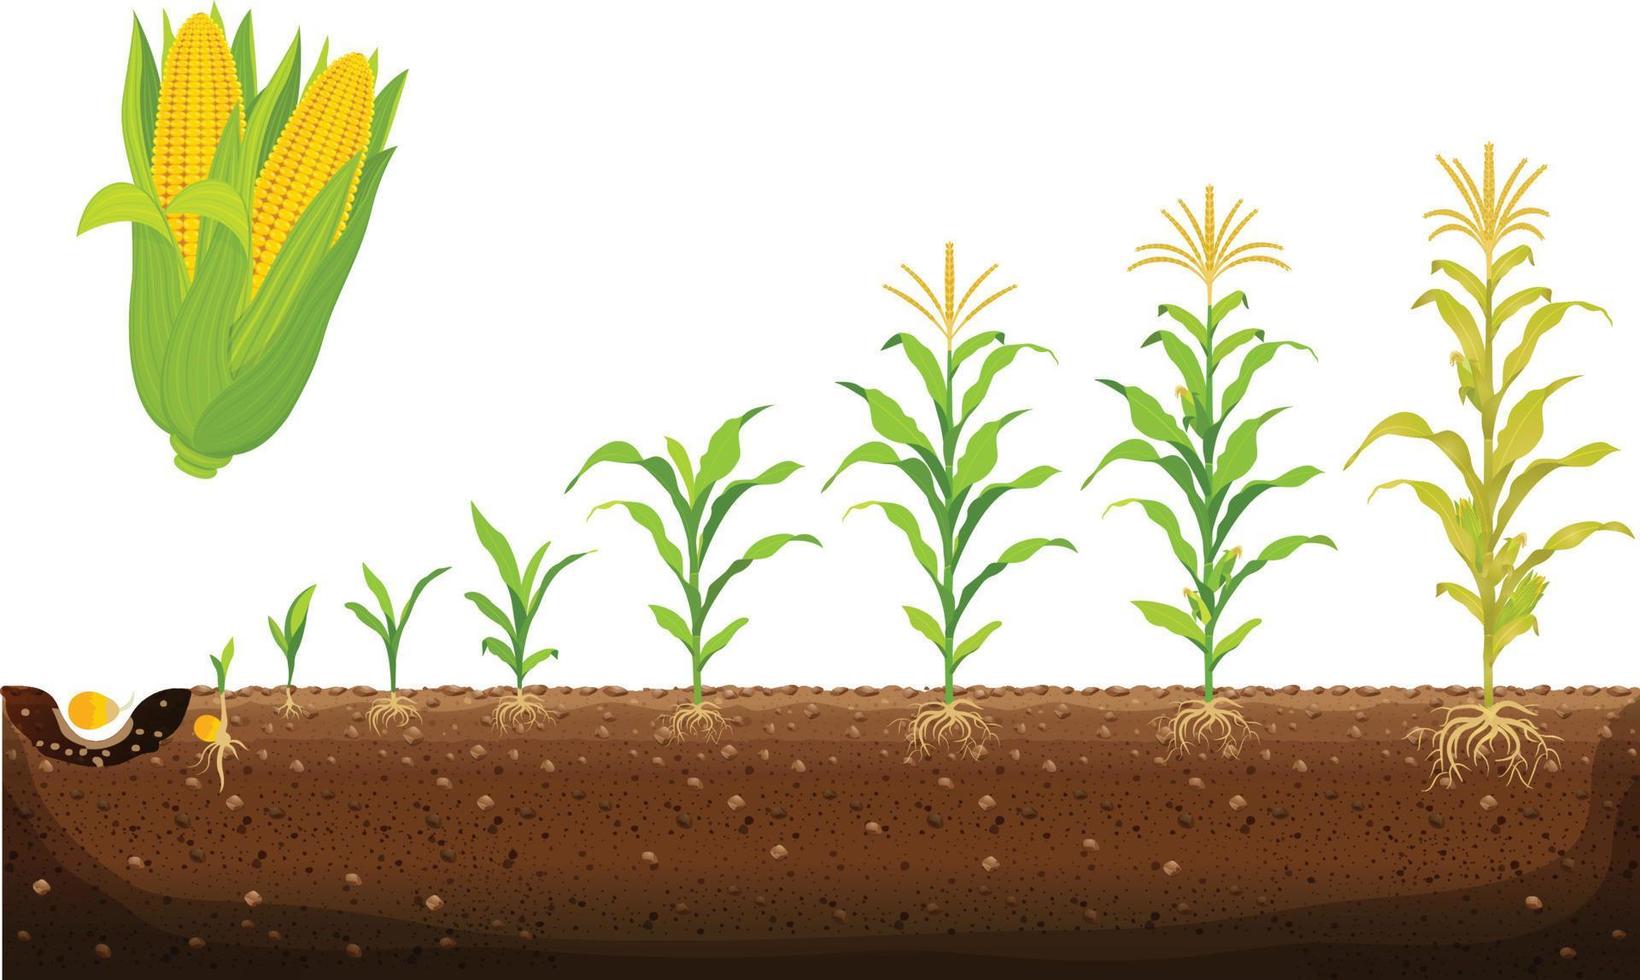 de fiets van groei van maïs. maïs groeit stadia vector illustratie in vlak ontwerp. aanplant werkwijze van de maïs fabriek. zaad kieming, wortel vorming, schiet met bladeren, en de oogsten stadium